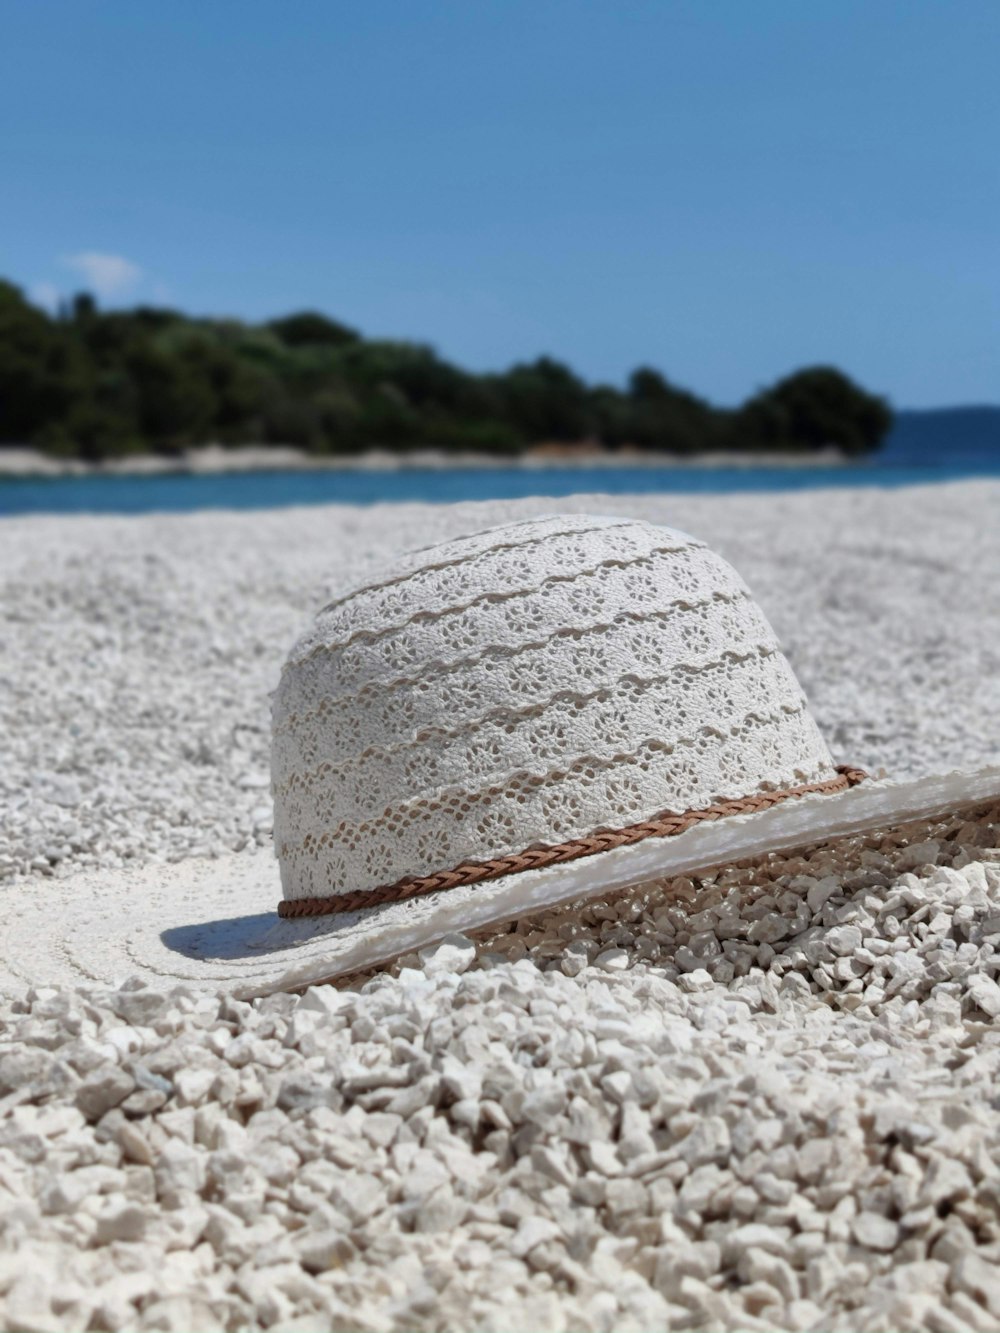 sombrero para el sol blanco y azul en la playa de arena blanca durante el día